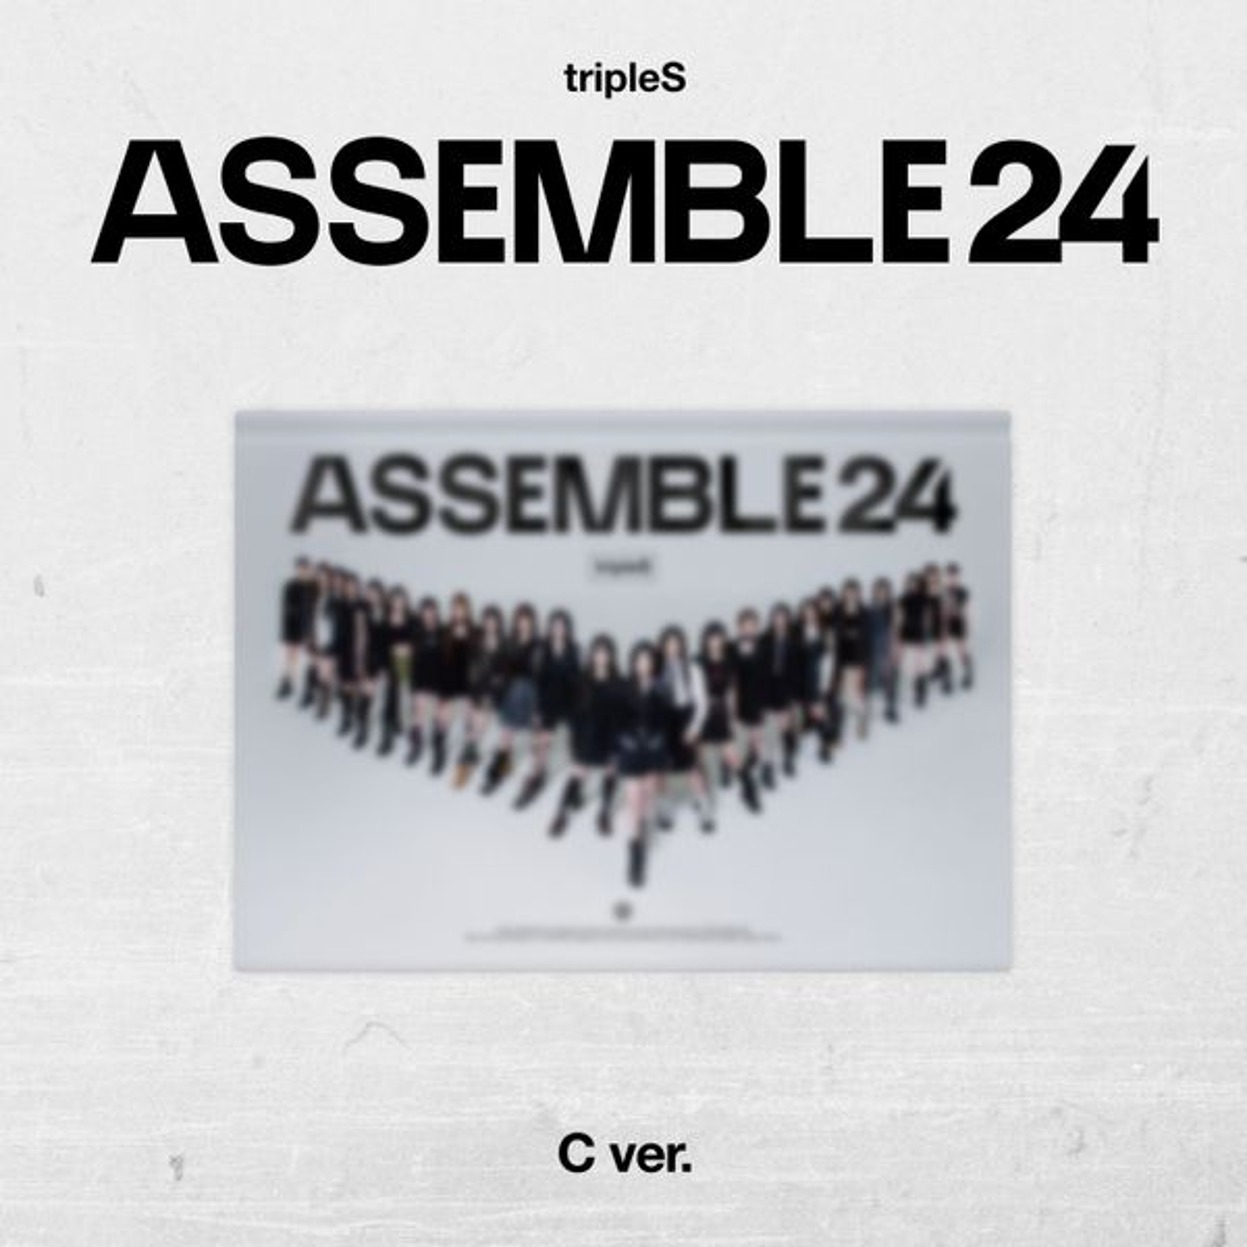 트리플에스 (tripleS) - 정규앨범 1집 [ASSEMBLE24] C Ver.